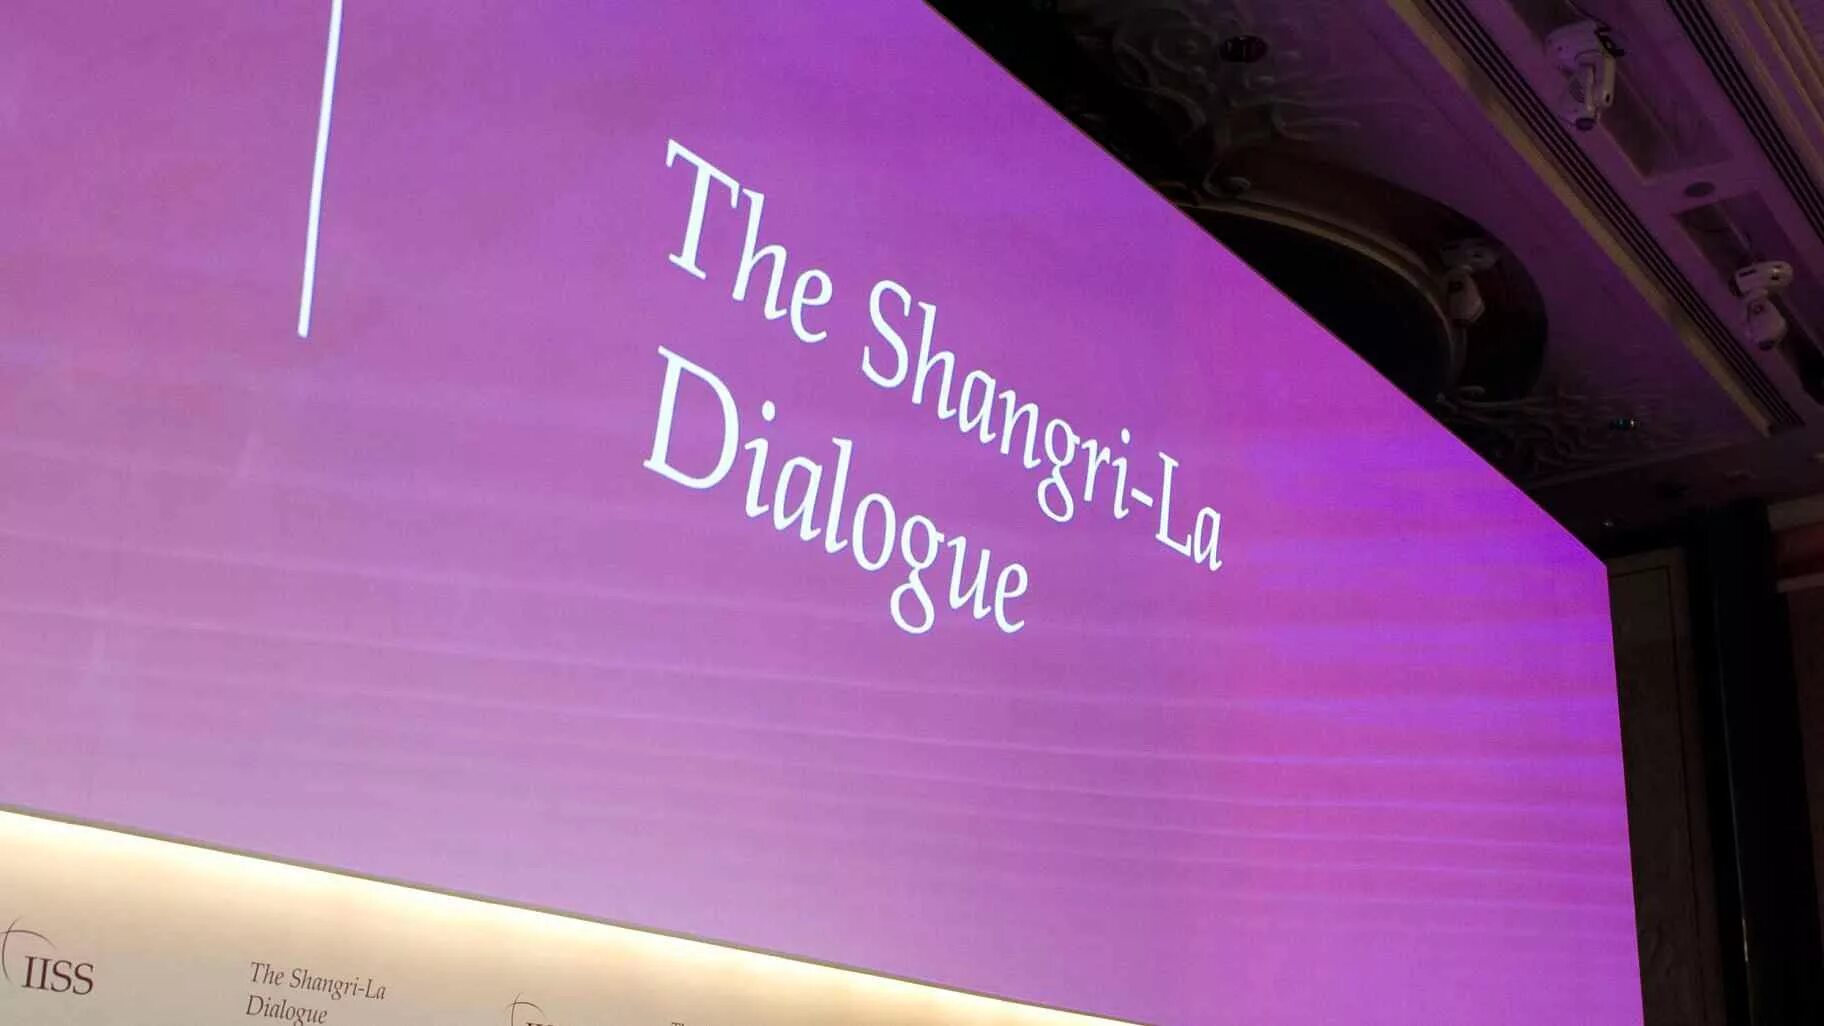 Dialogue la. Шангри ла диалог. Саммит Шангри ла диалог в Сингапуре 2018. Азиатский саммит по безопасности Шангри ла. Конференция Shangri-la Dialogue (SLD) В Сингапуре 2018.